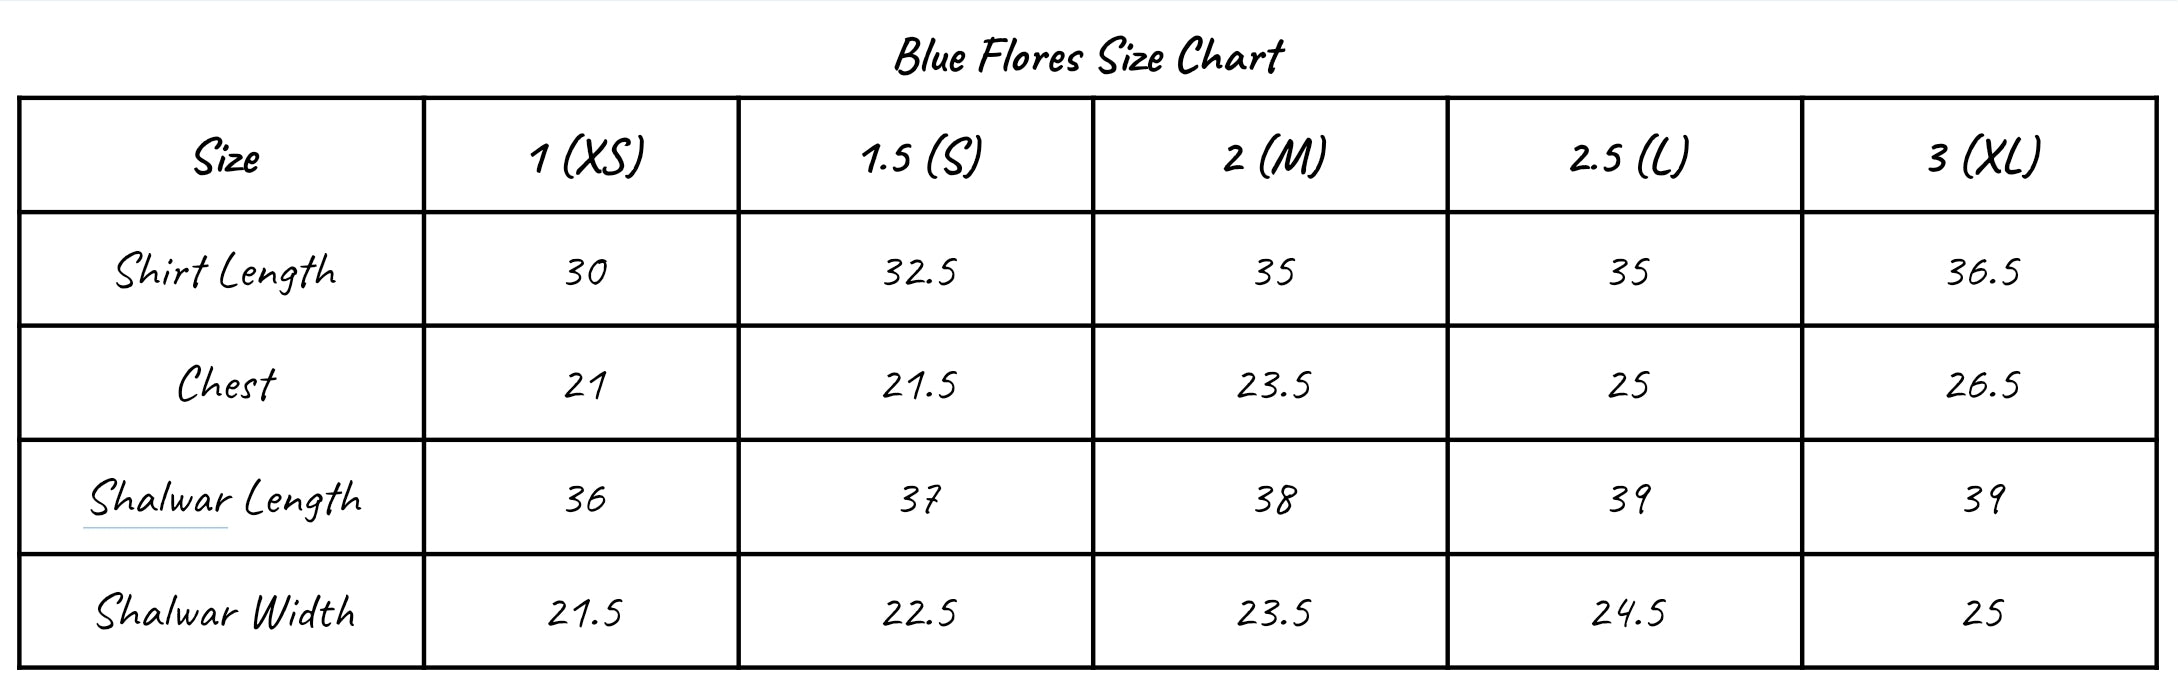 Blue Flores